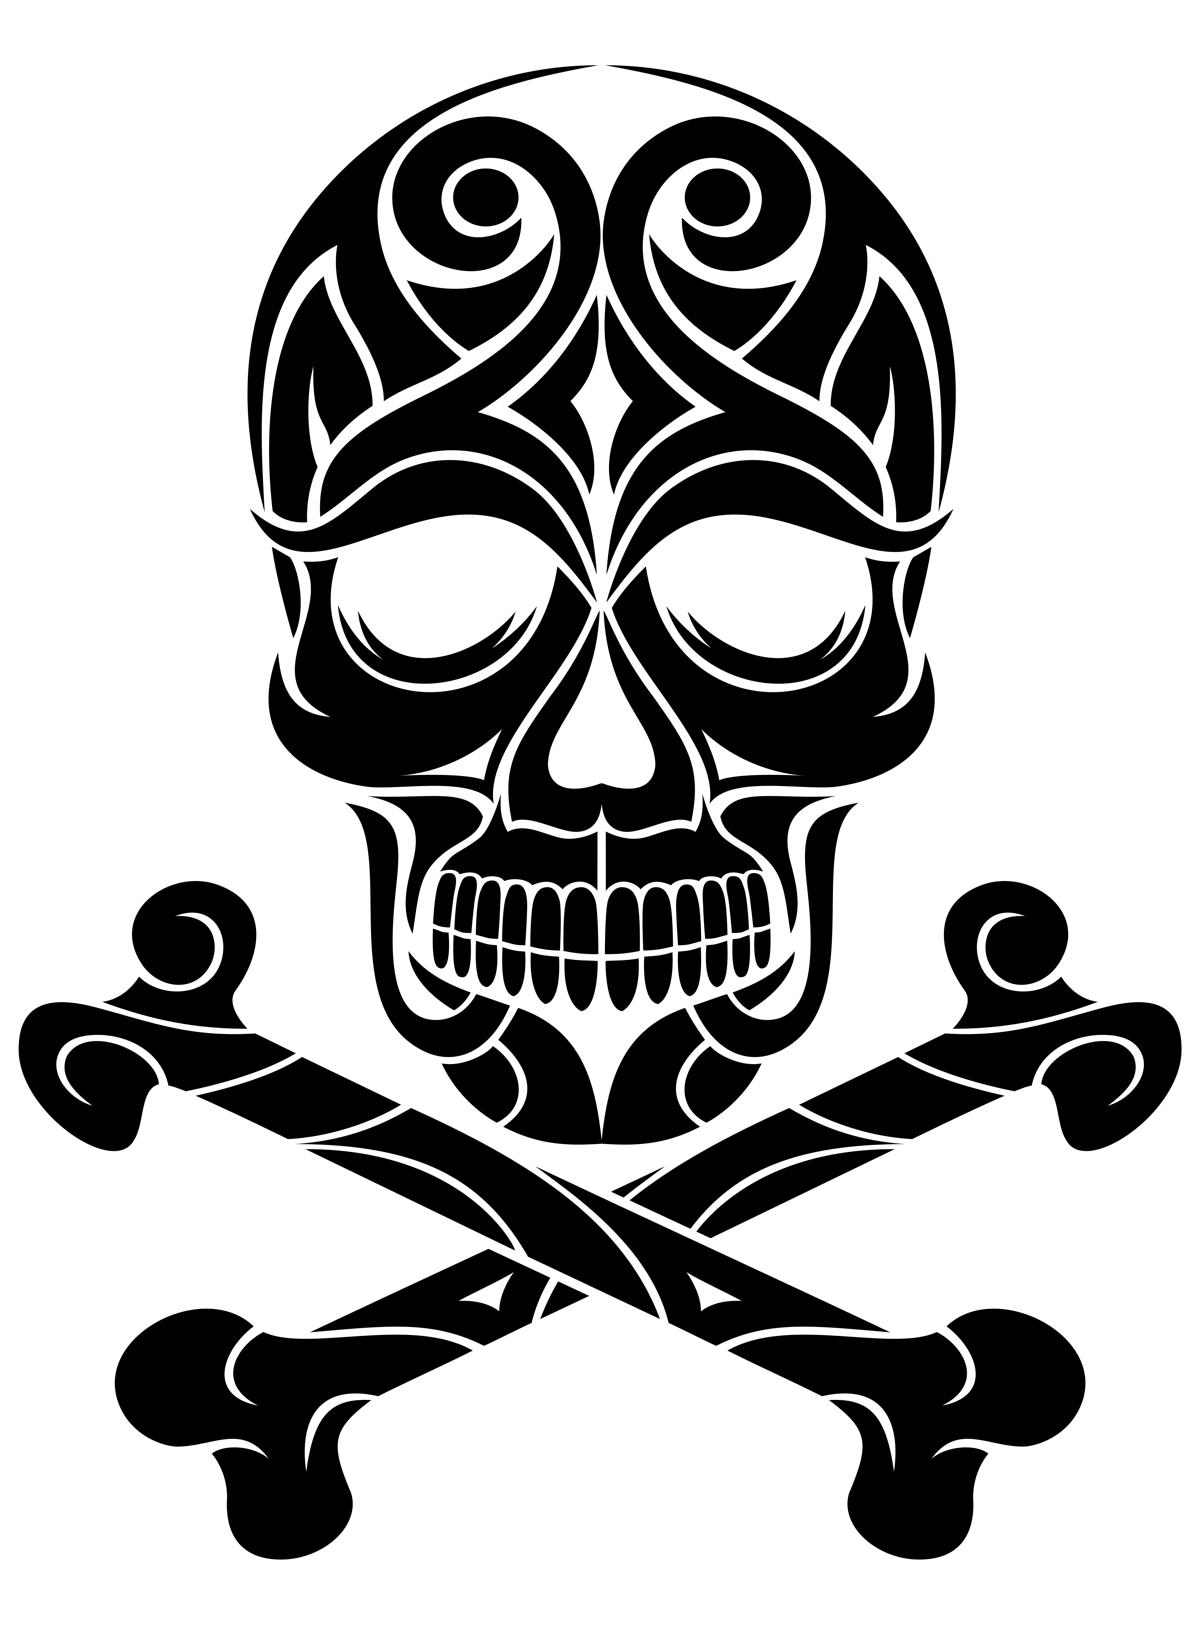 Skull and crossed bones tattoo on the left forearm  Bone tattoos Tattoos  Forearm tattoos